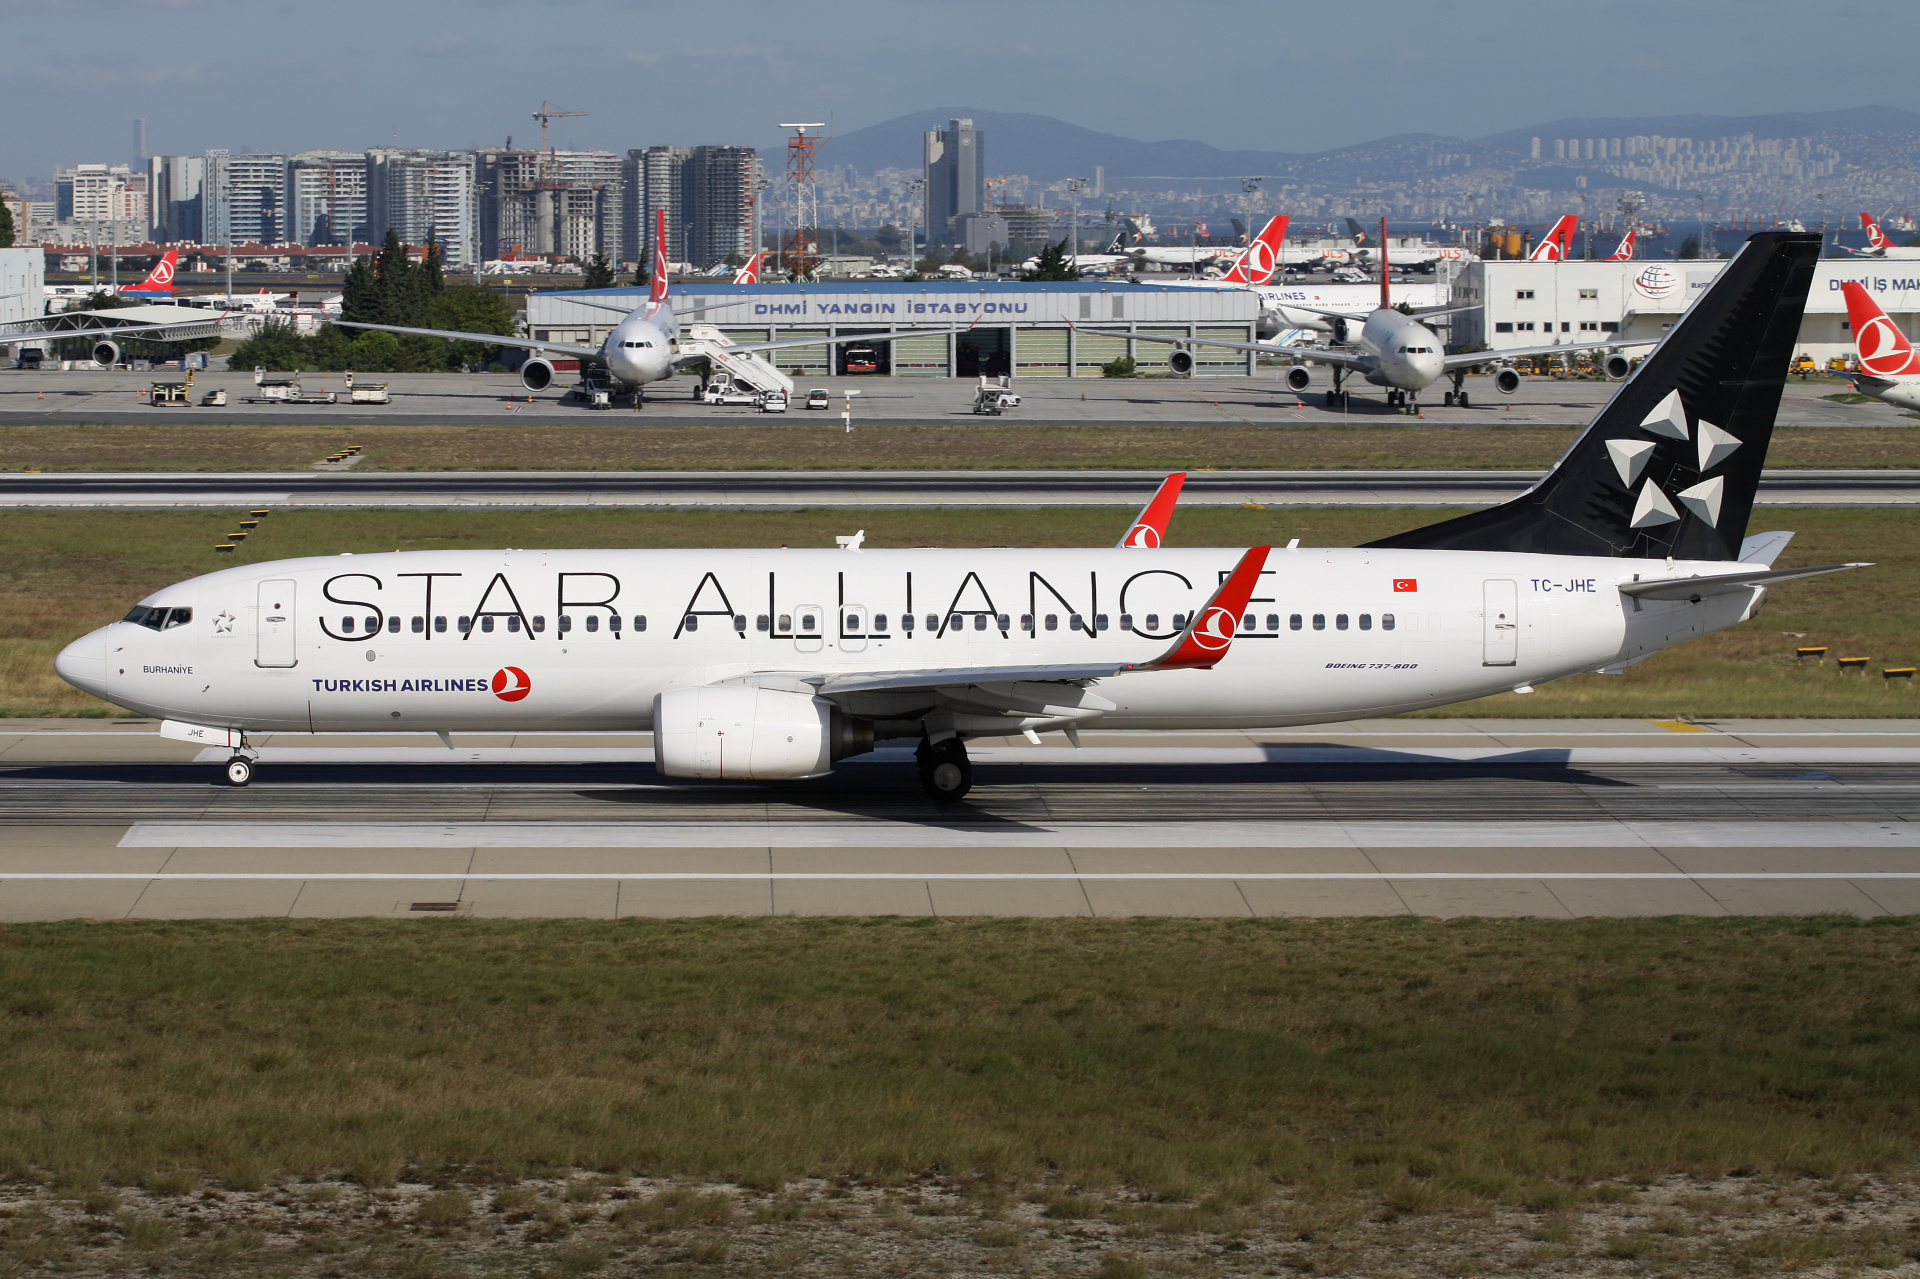 TC-JHE (malowanie Star Alliance) (Samoloty » Port Lotniczy im. Atatürka w Stambule » Boeing 737-800 » THY Turkish Airlines)